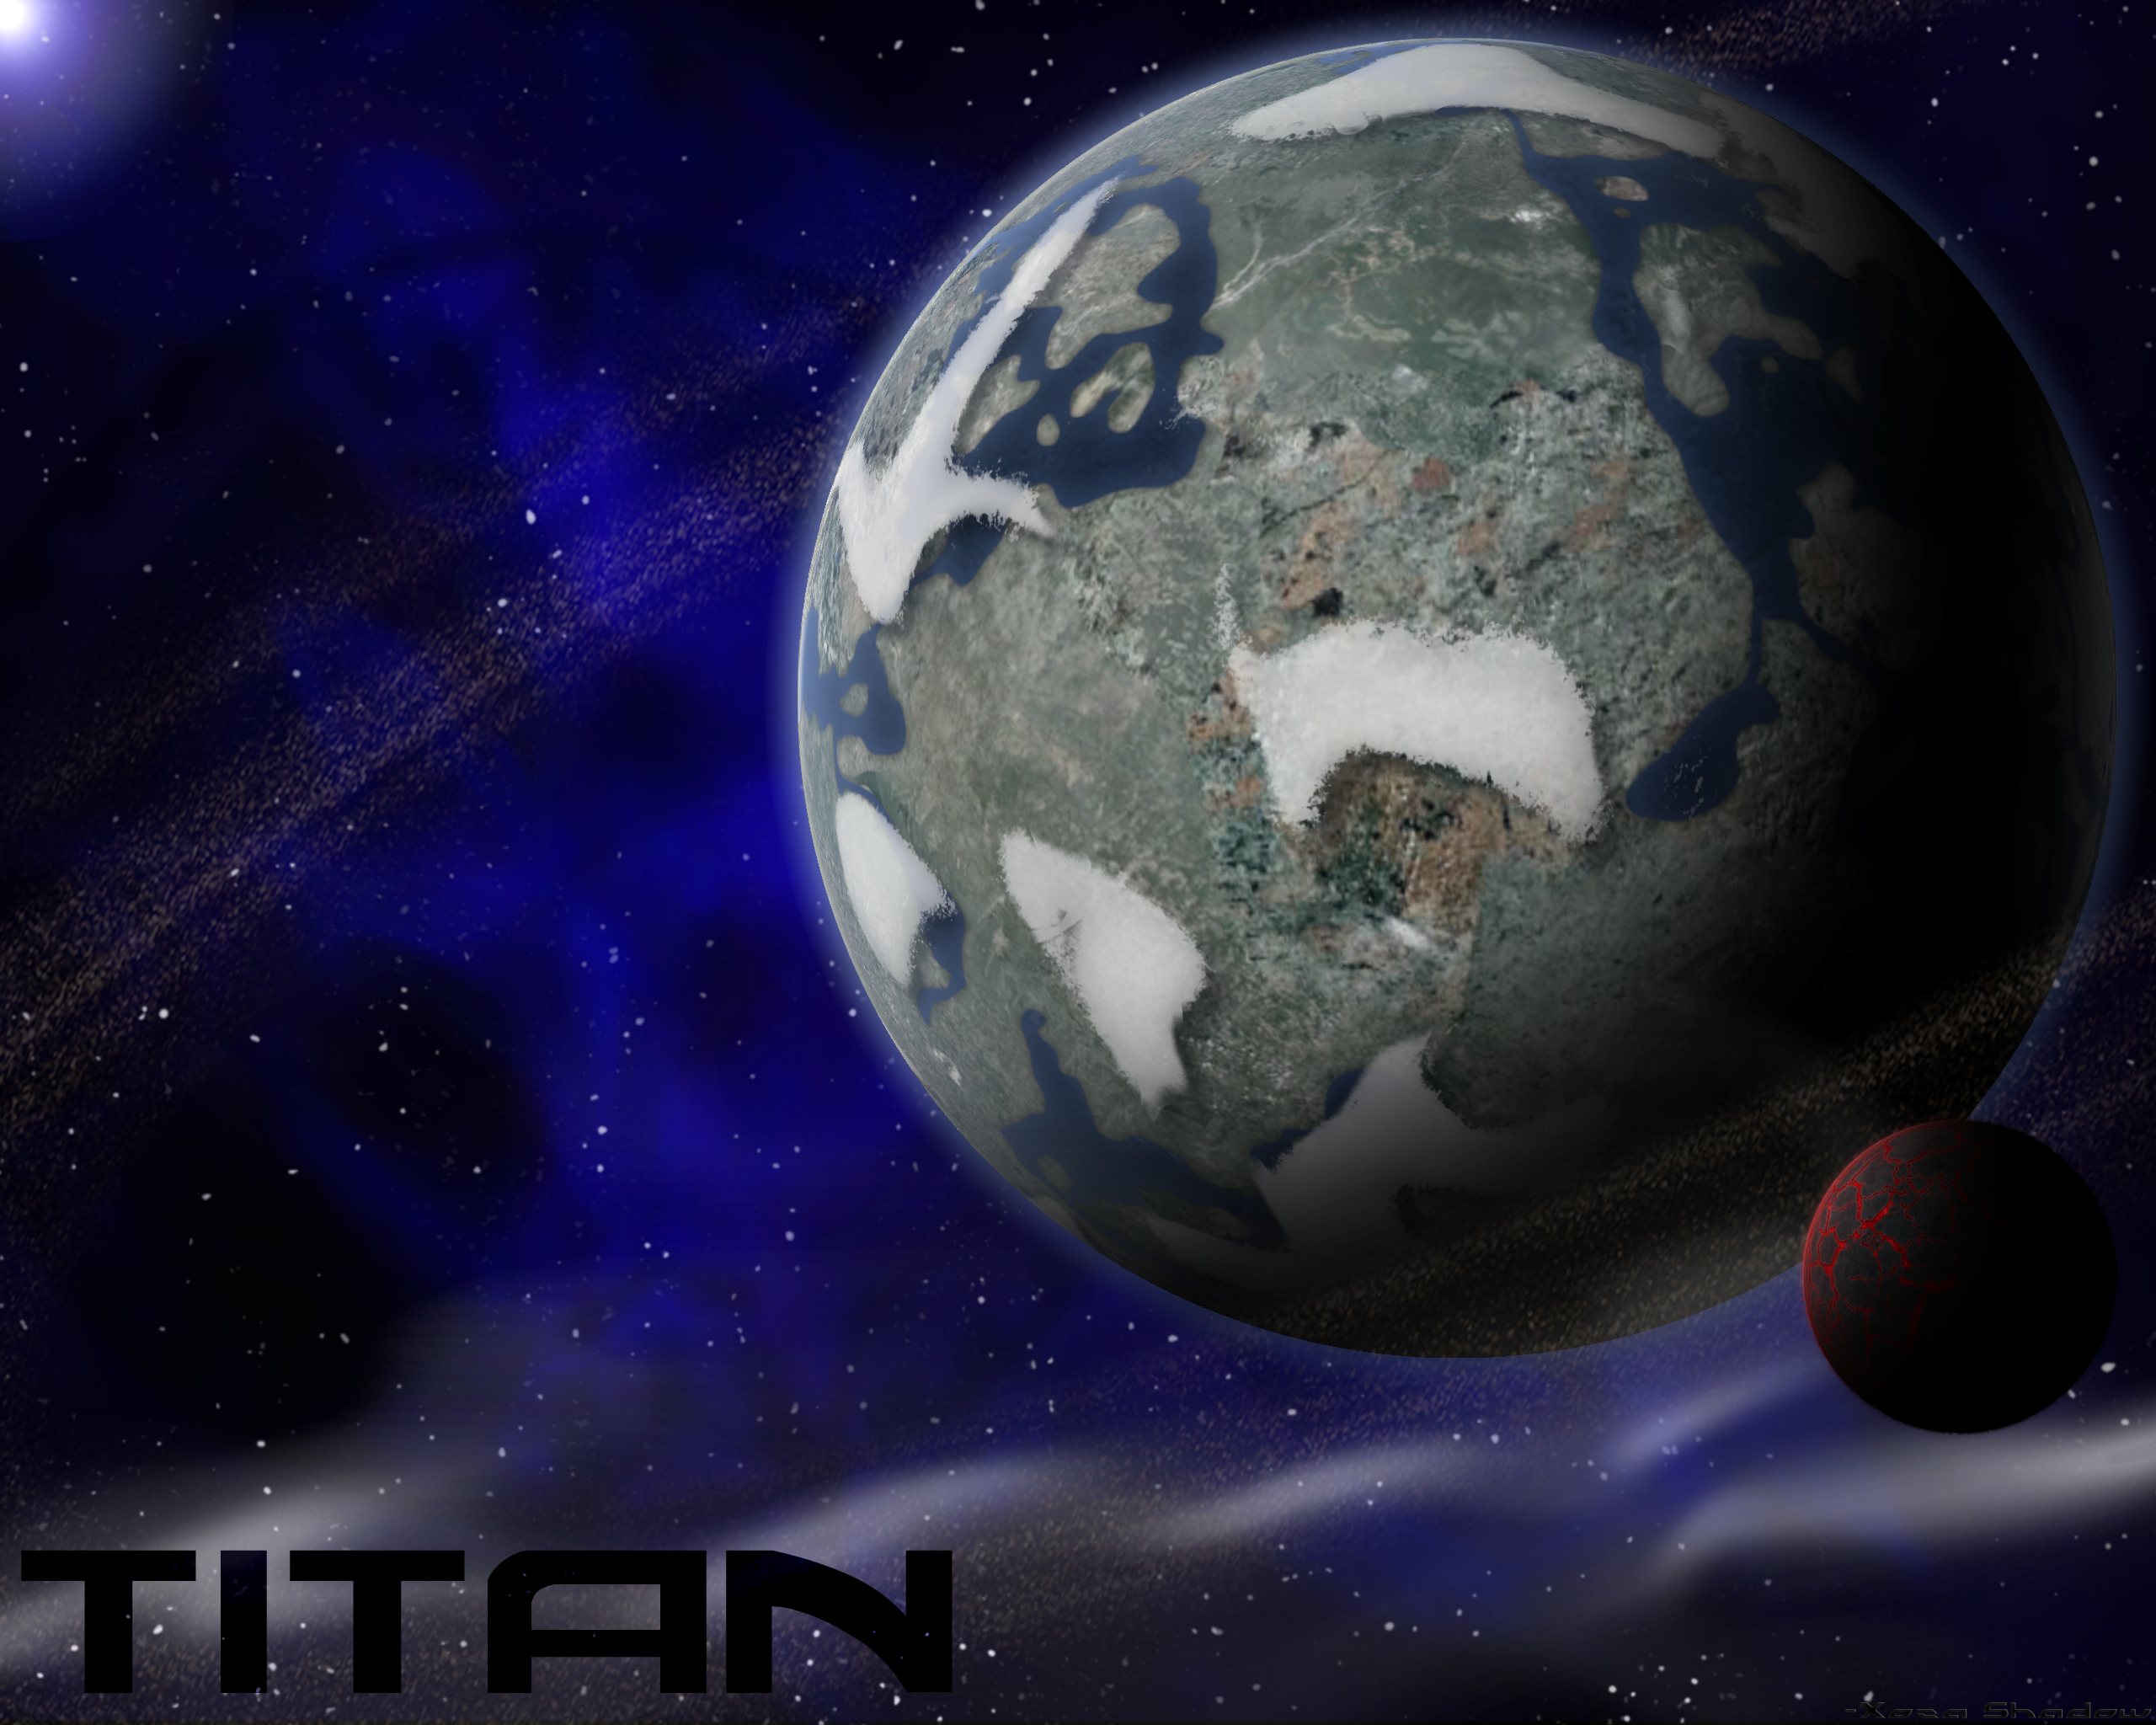 titan_space_wallpaper_by_xoza-d4p158u.pn